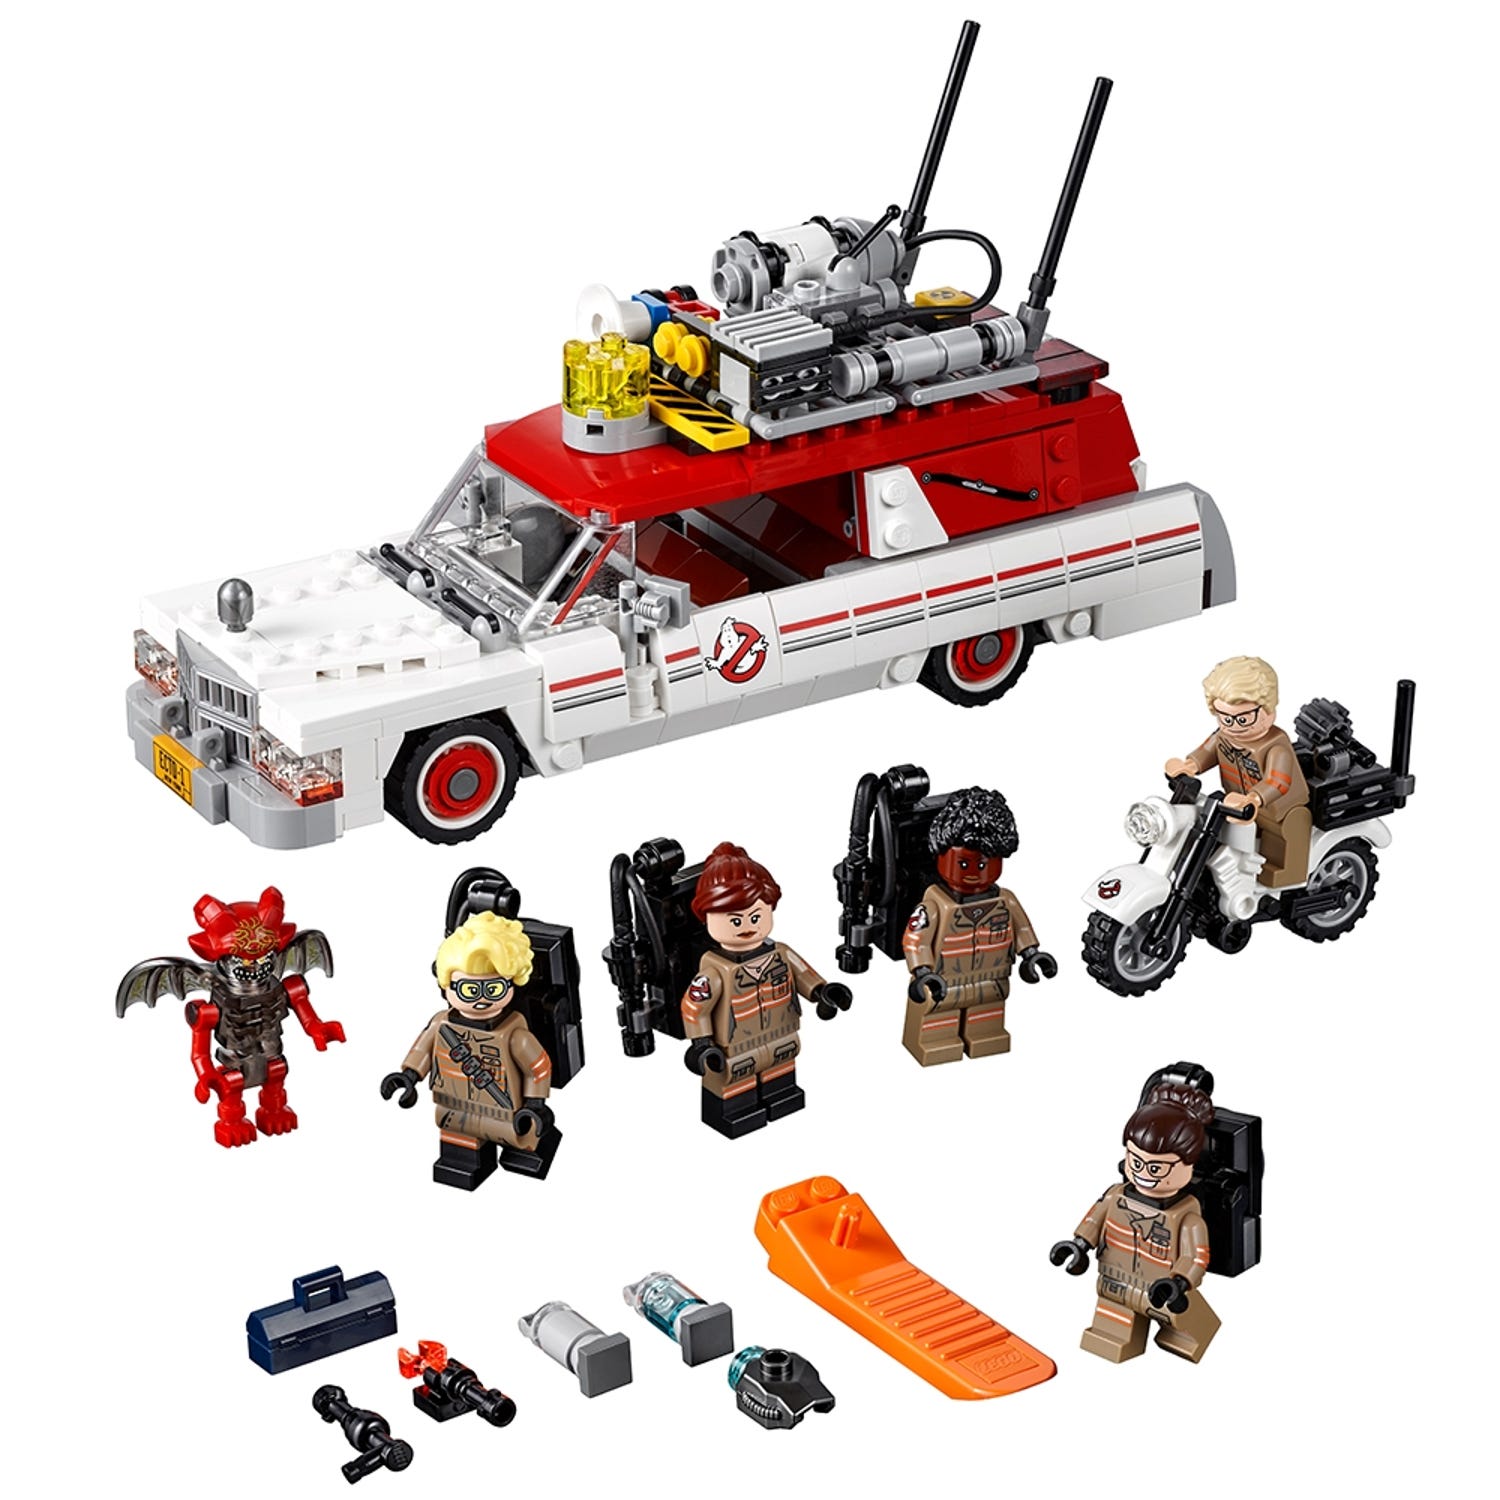 sovjetisk Se tilbage Oberst Ecto-1 & 2 75828 | Ghostbusters™ | Buy online at the Official LEGO® Shop US